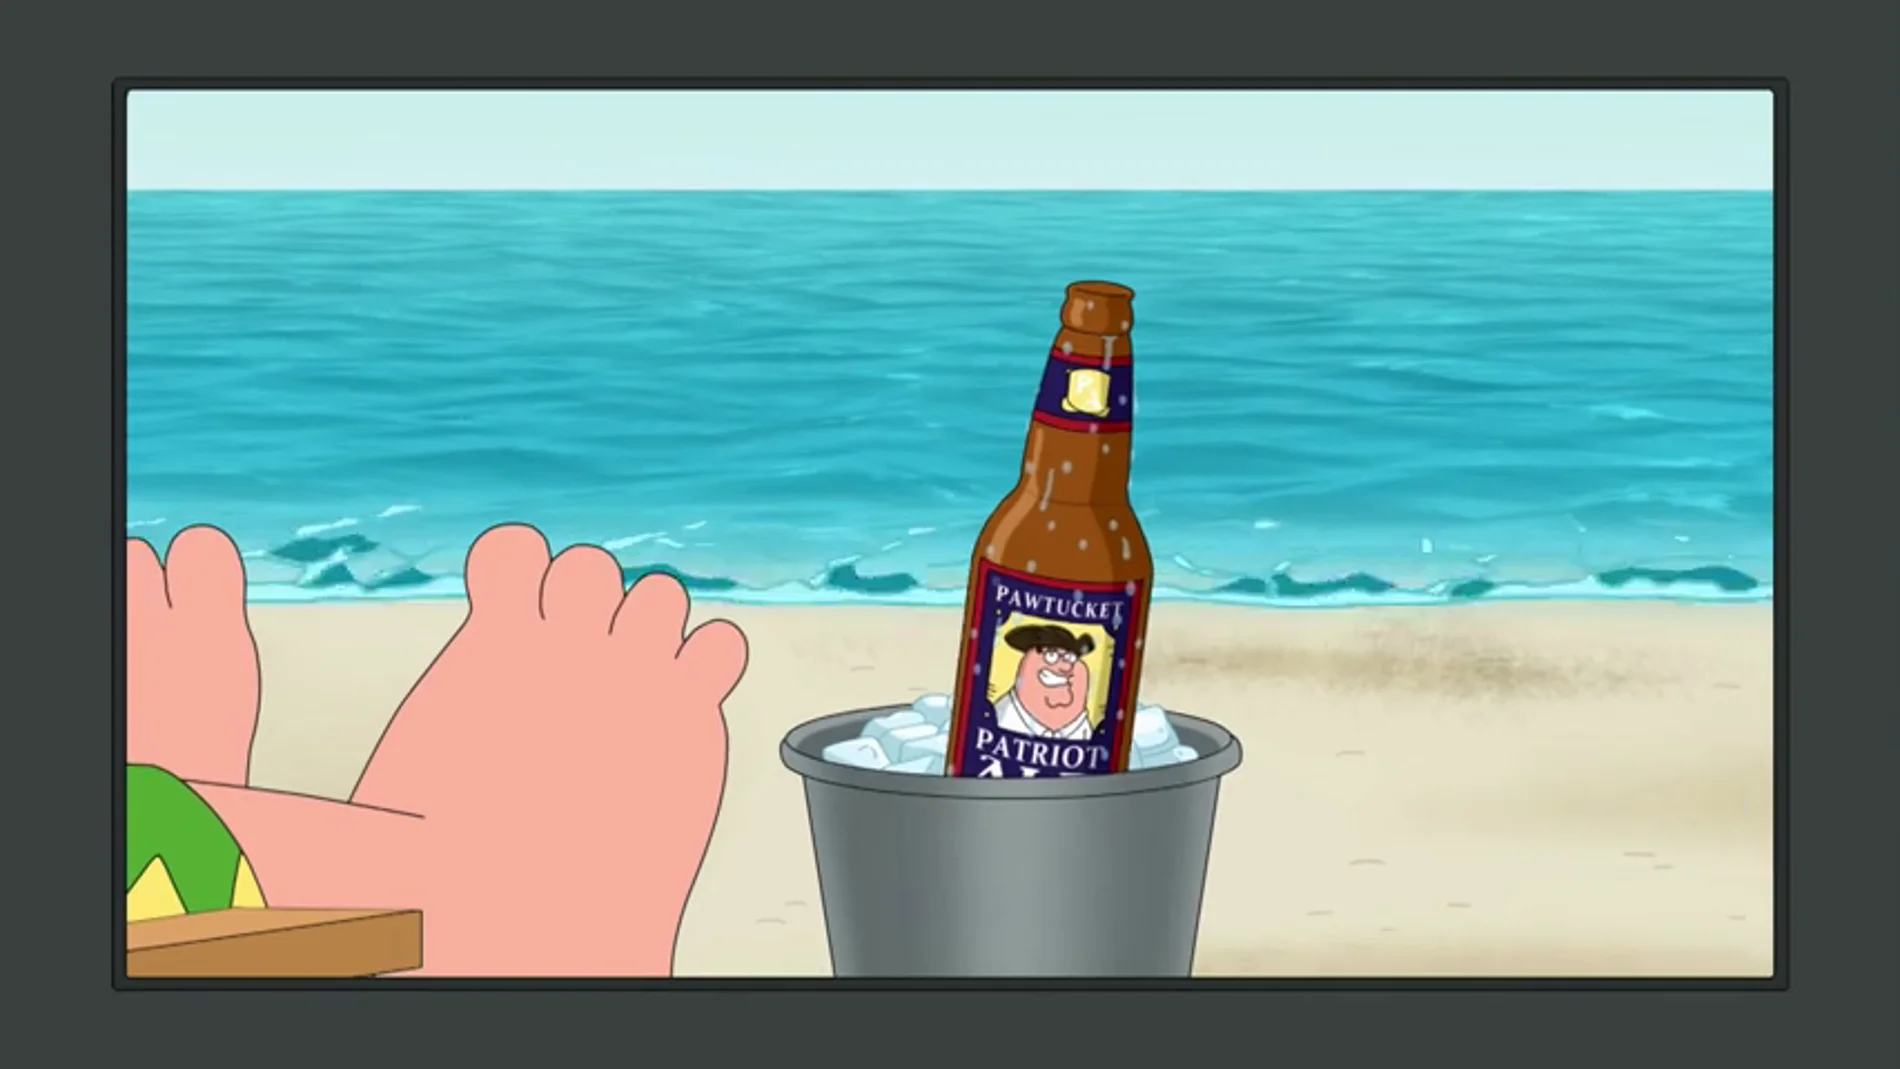 Peter se convierte en mascota de una marca de cerveza